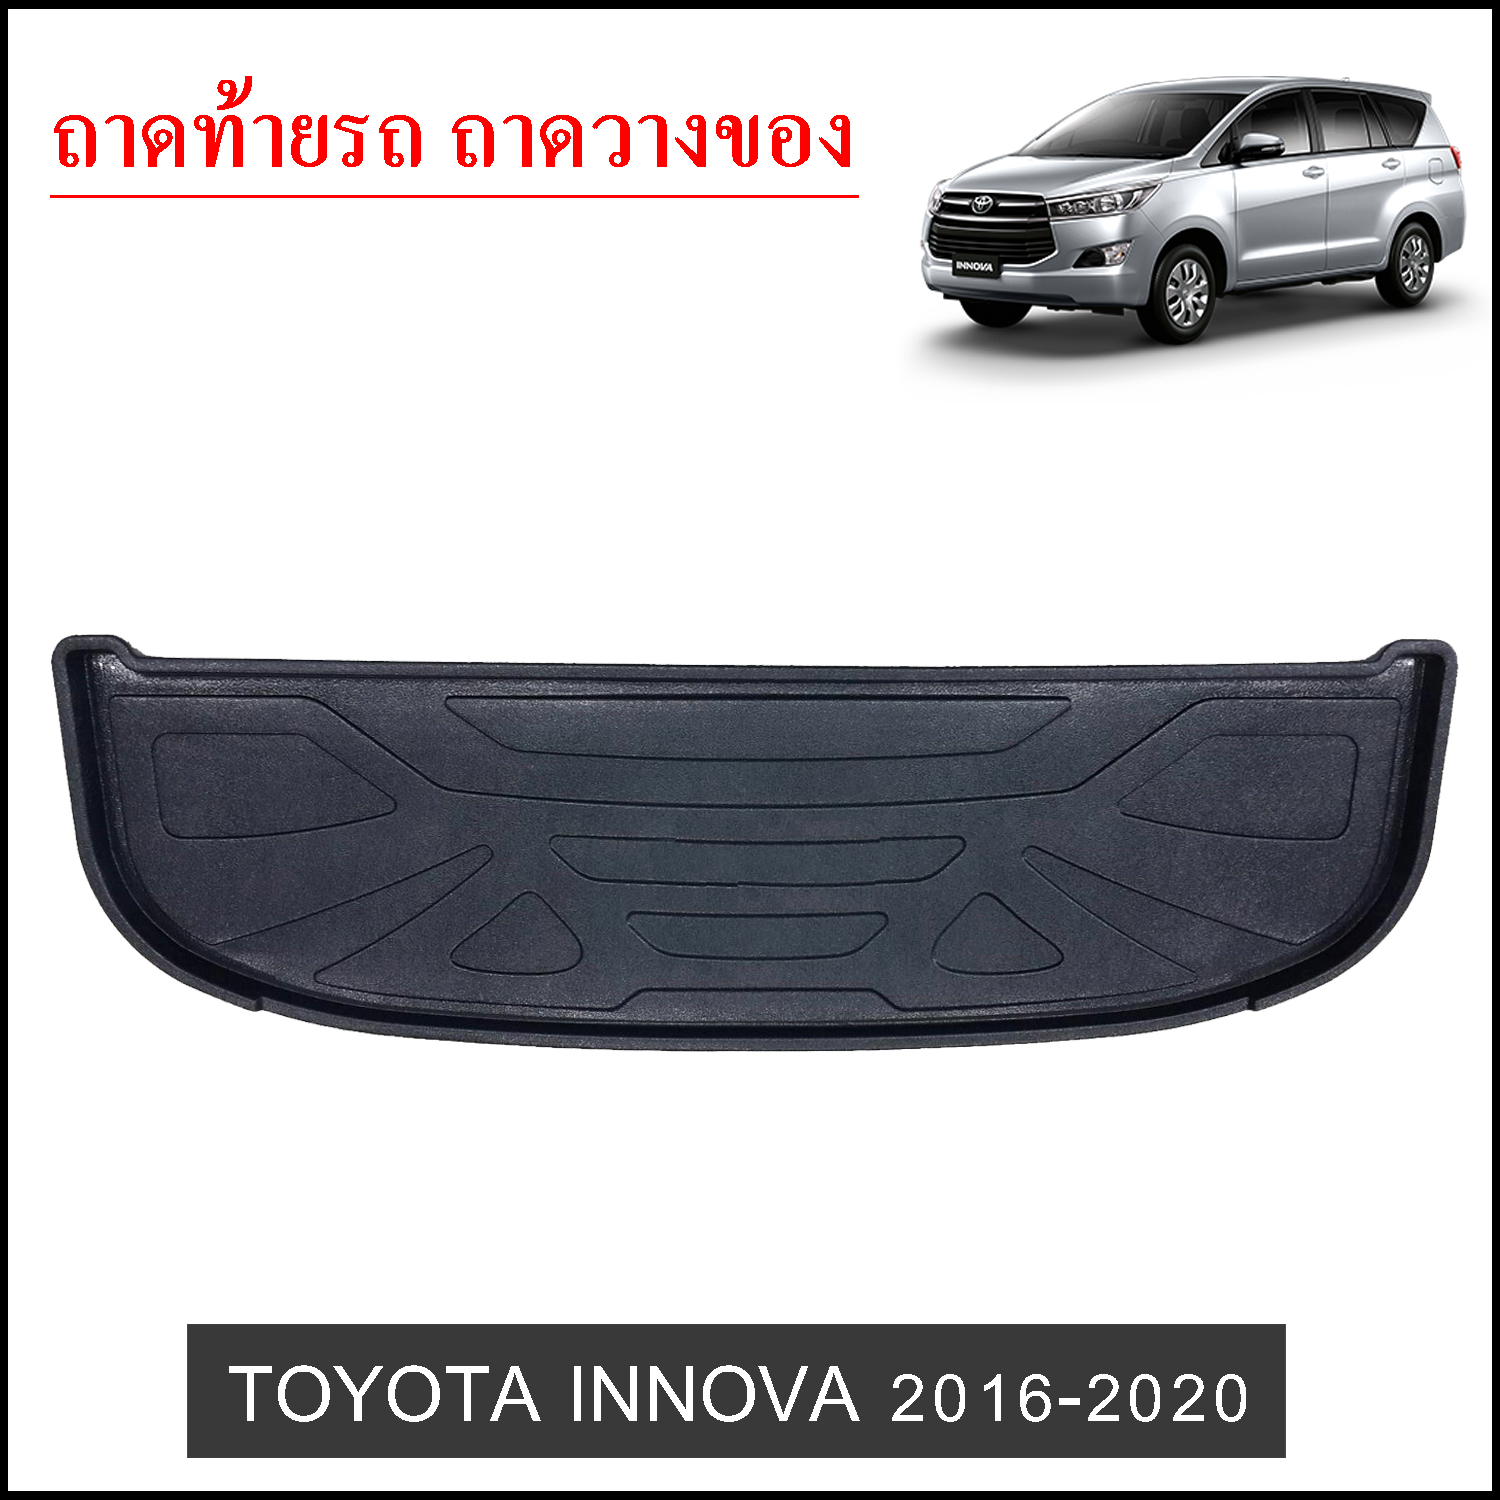 Toyota Innova 2016-2020